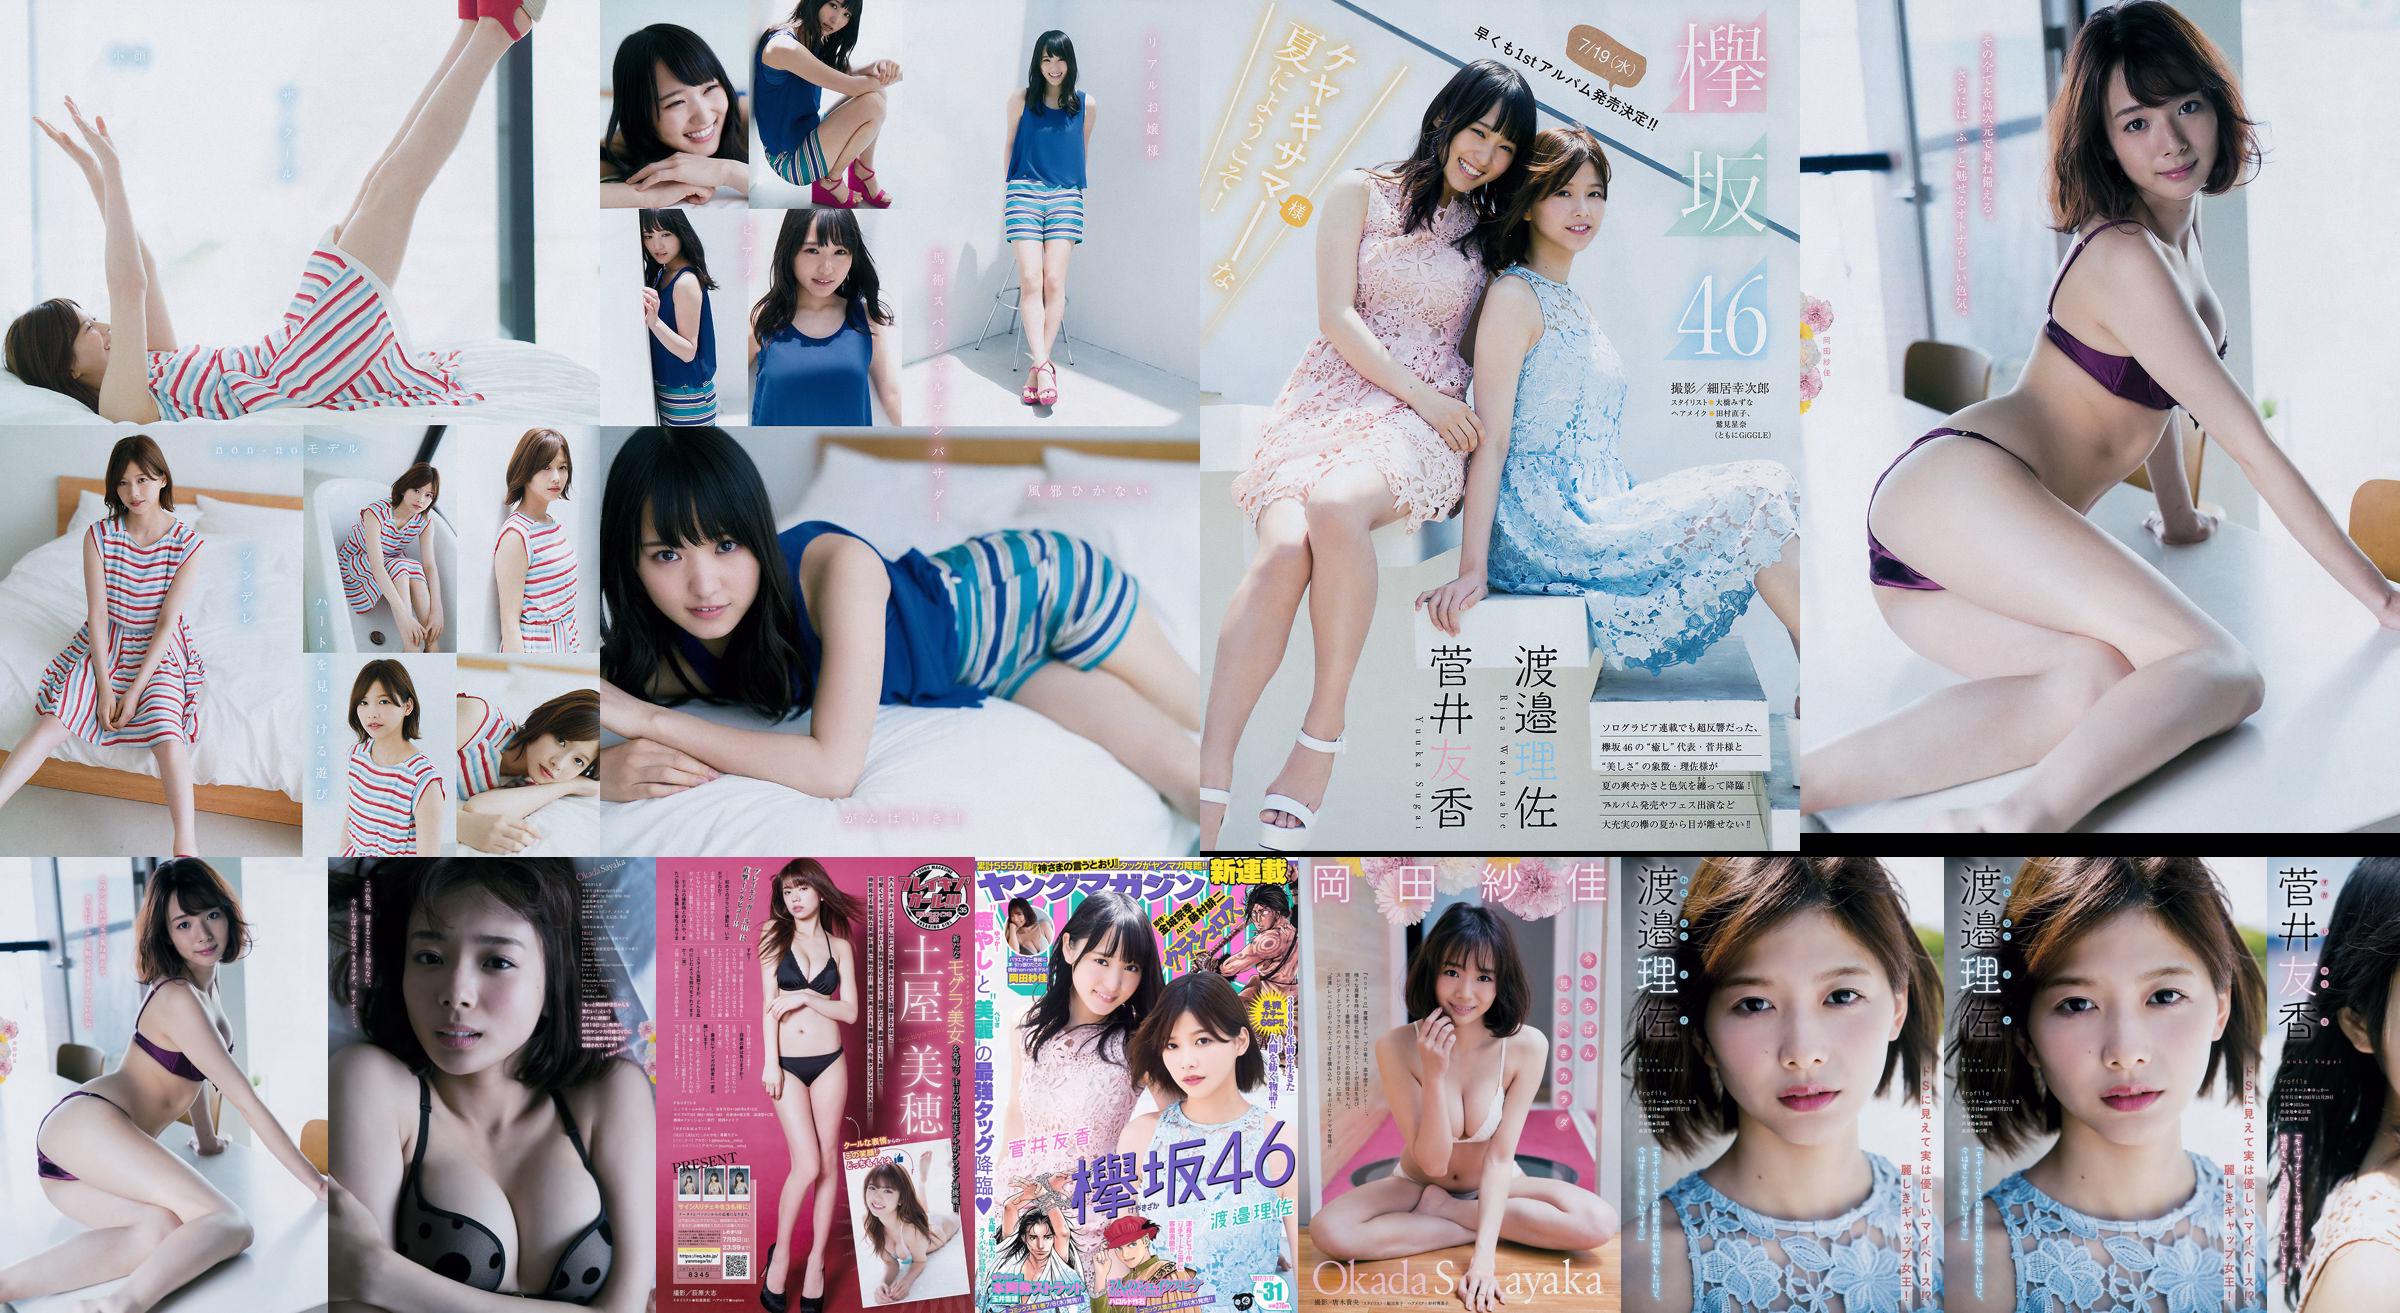 [Young Magazine] Watanabe Risa, Sugai Yuka, Okada Saika 2017 No.31 Photo Magazine No.d04816 Pagina 1